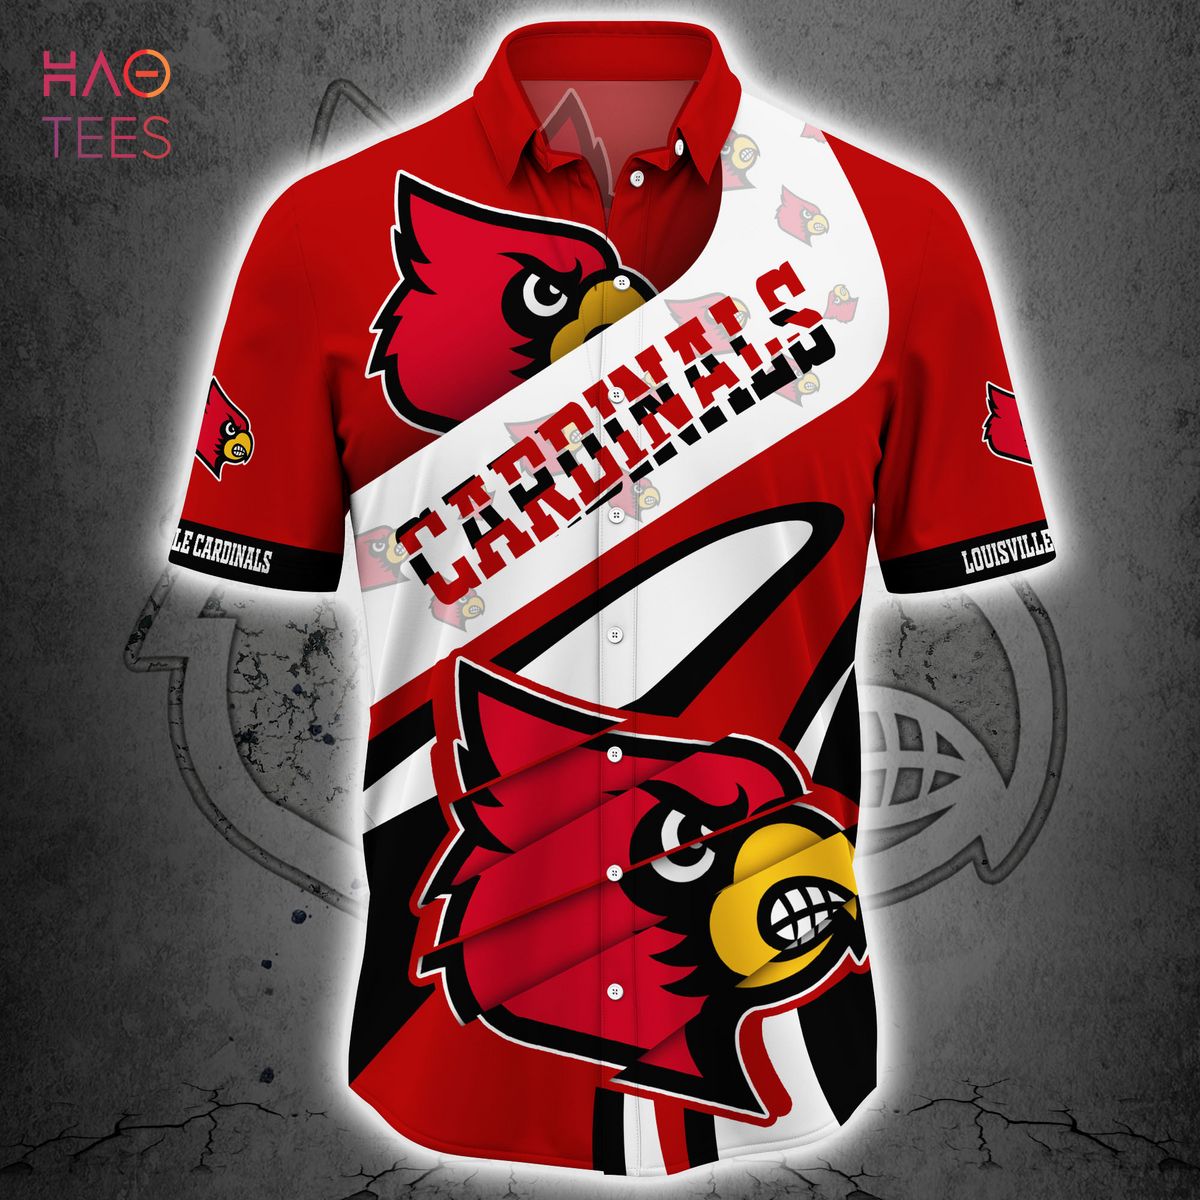 Louisville Cardinals Football Player Hawaiian Shirt - Hot Sale 2023